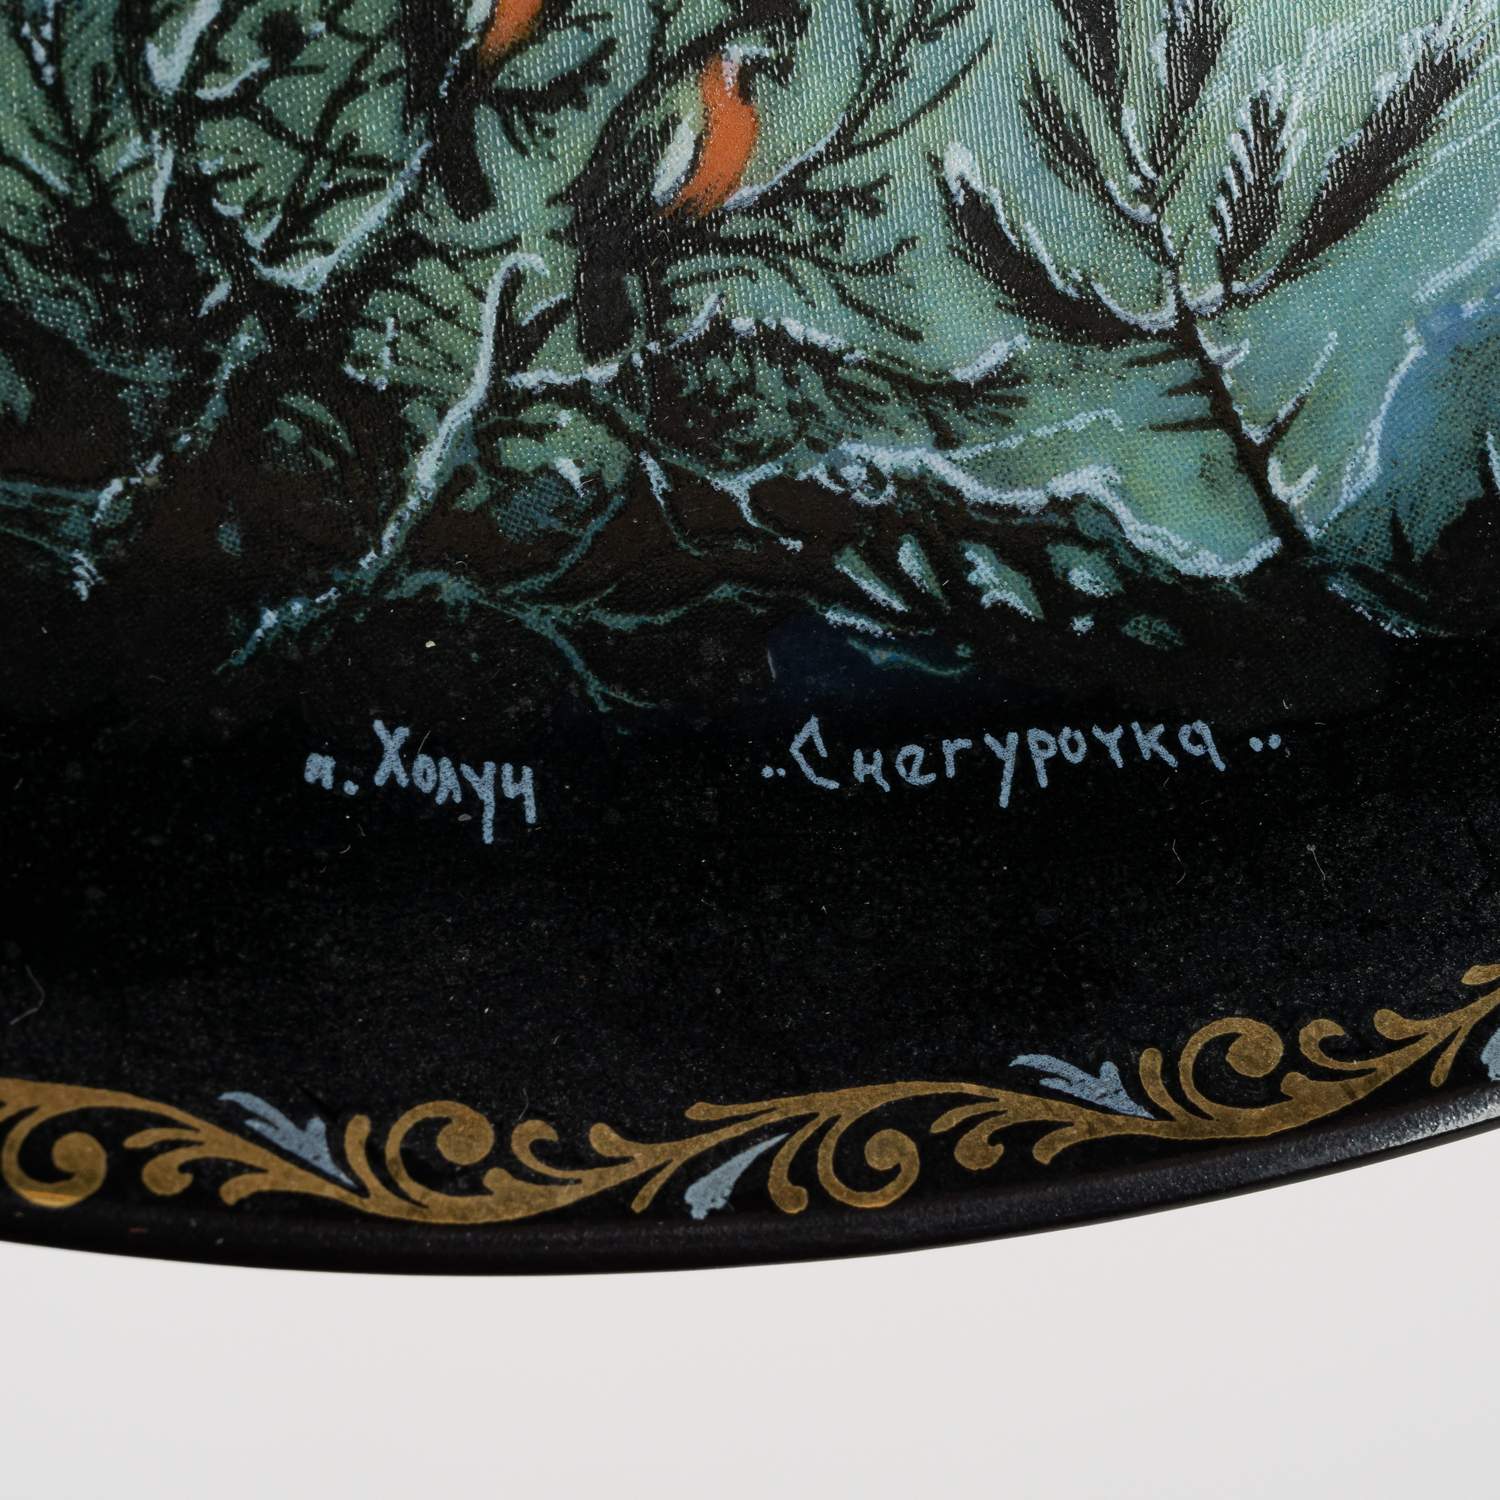 Декоративная тарелка «Снегурочка» из серии «Сказка о Снегурочке».<br>СССР, Холуй, художник – А. Каморин, 1989 г.